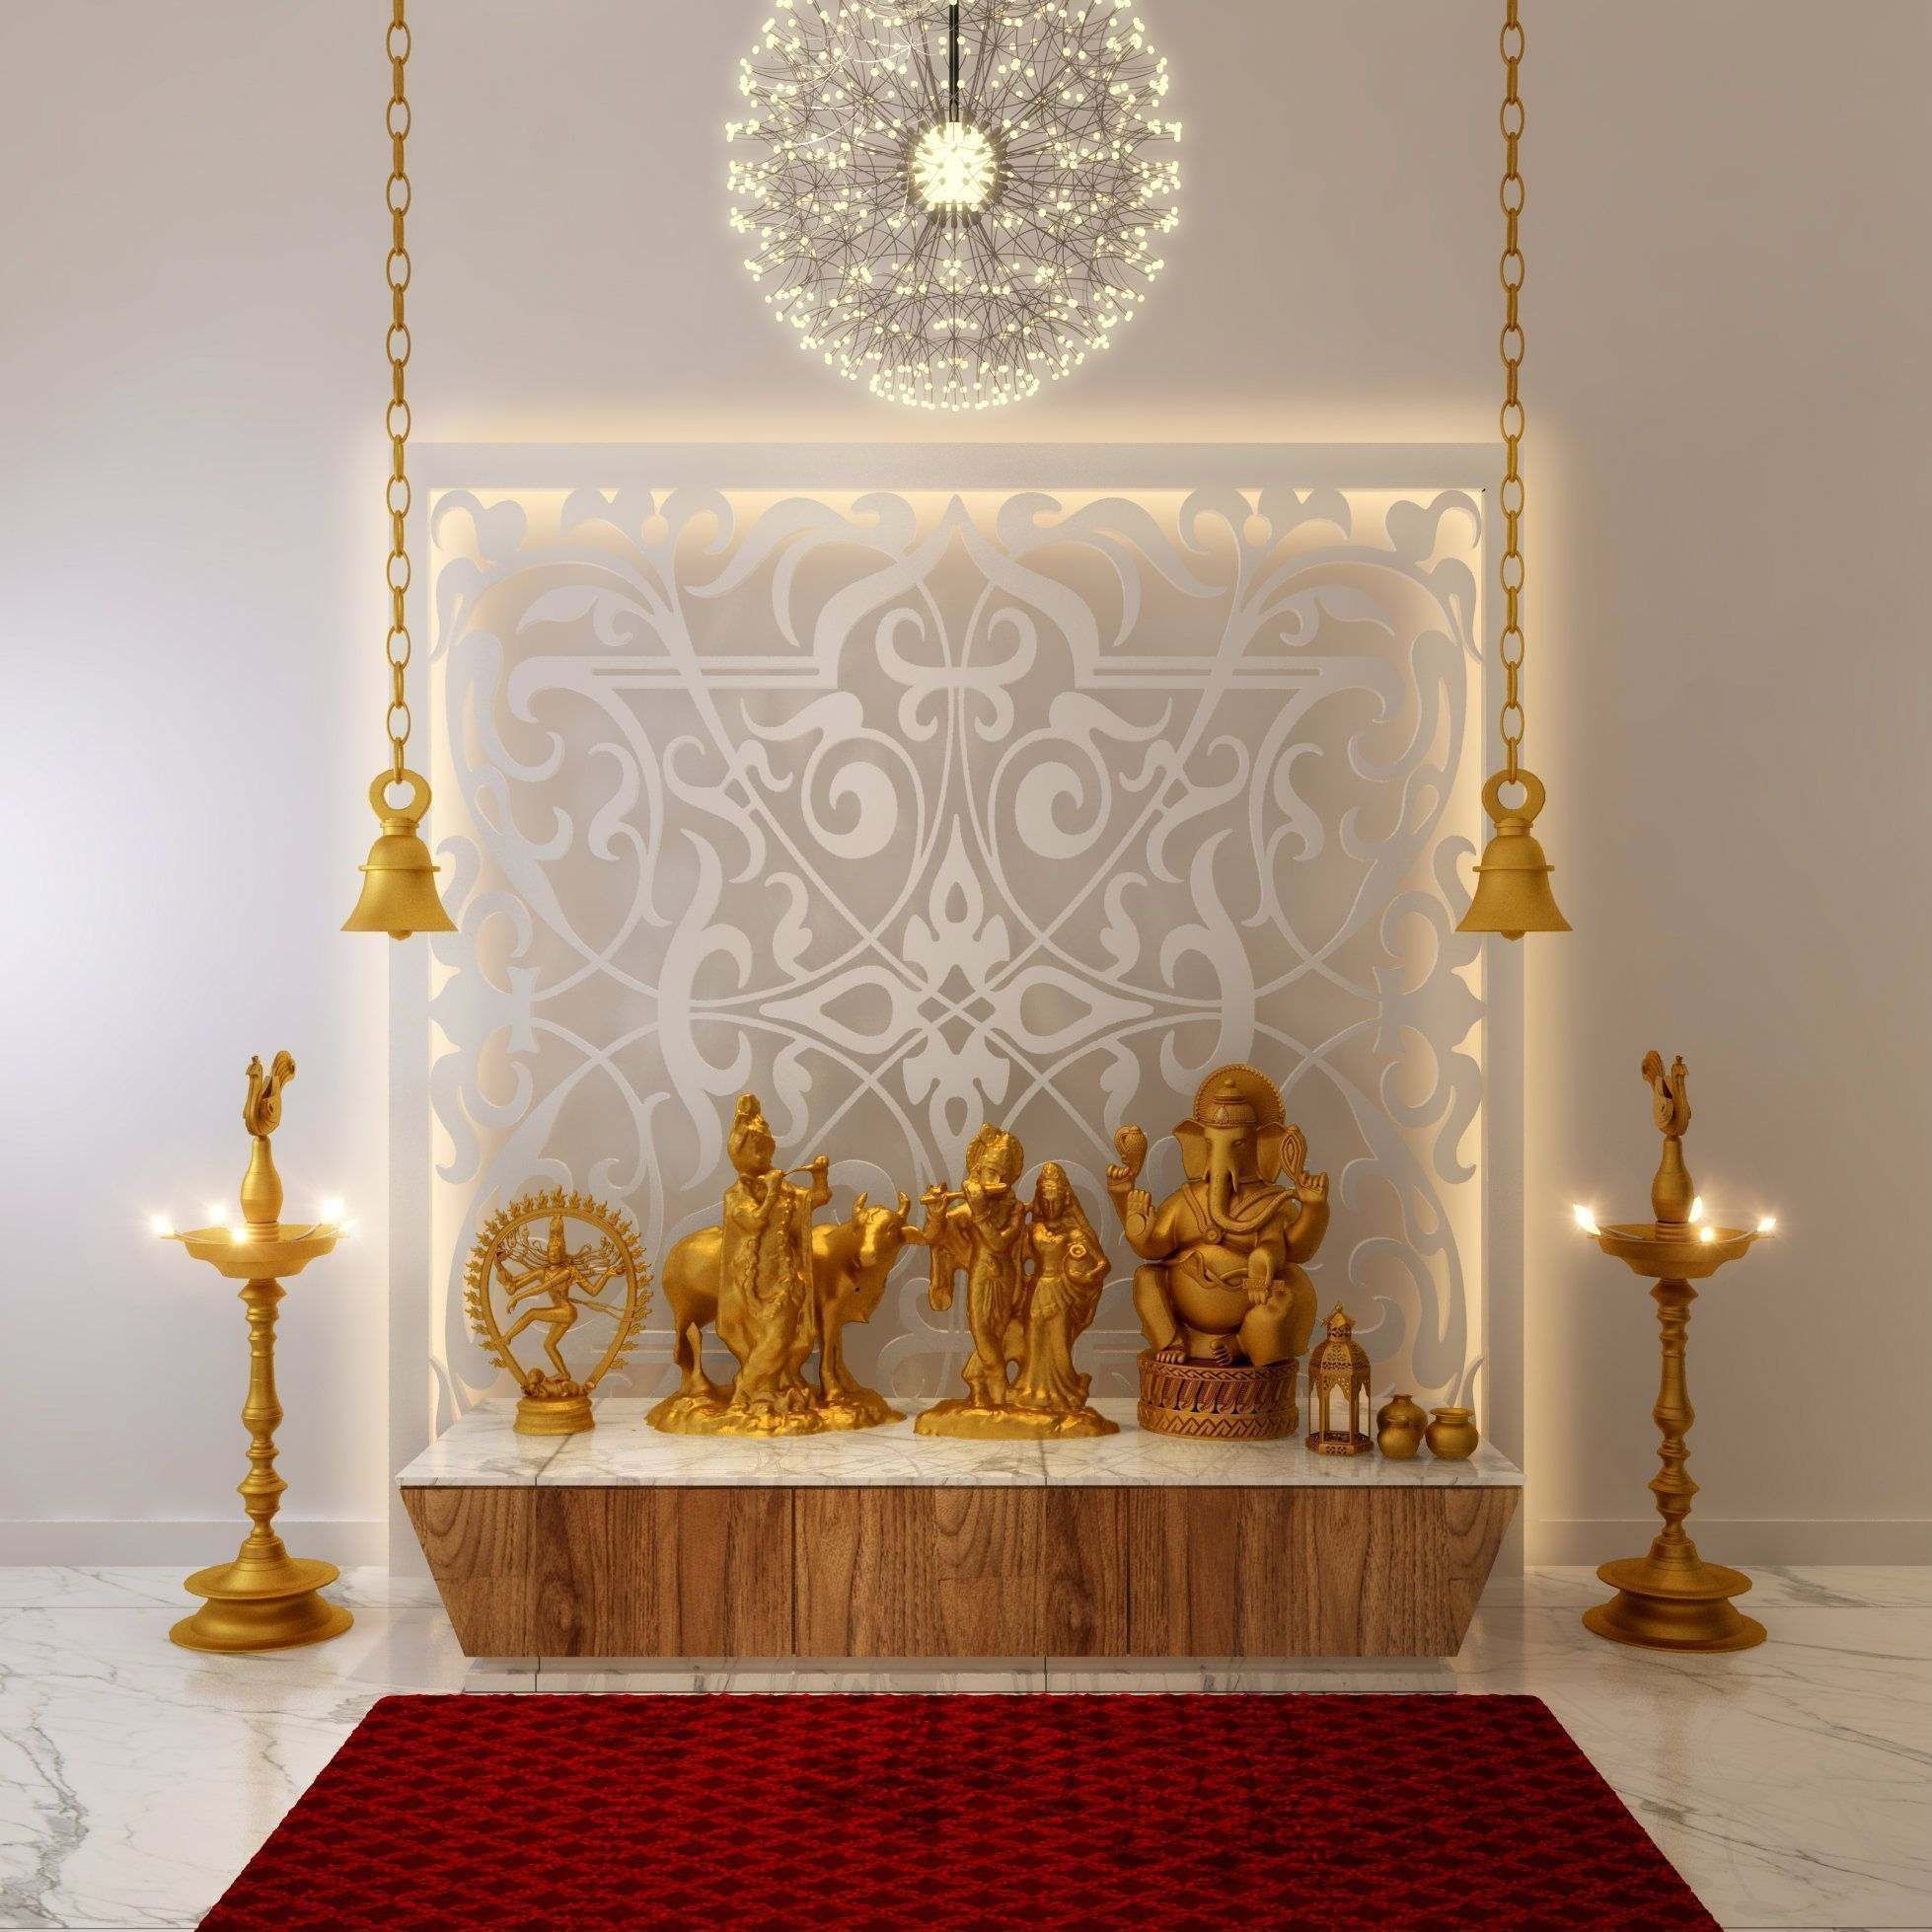 16 Mandir Designs For Home - Elegant Home Temple Designs for a ...